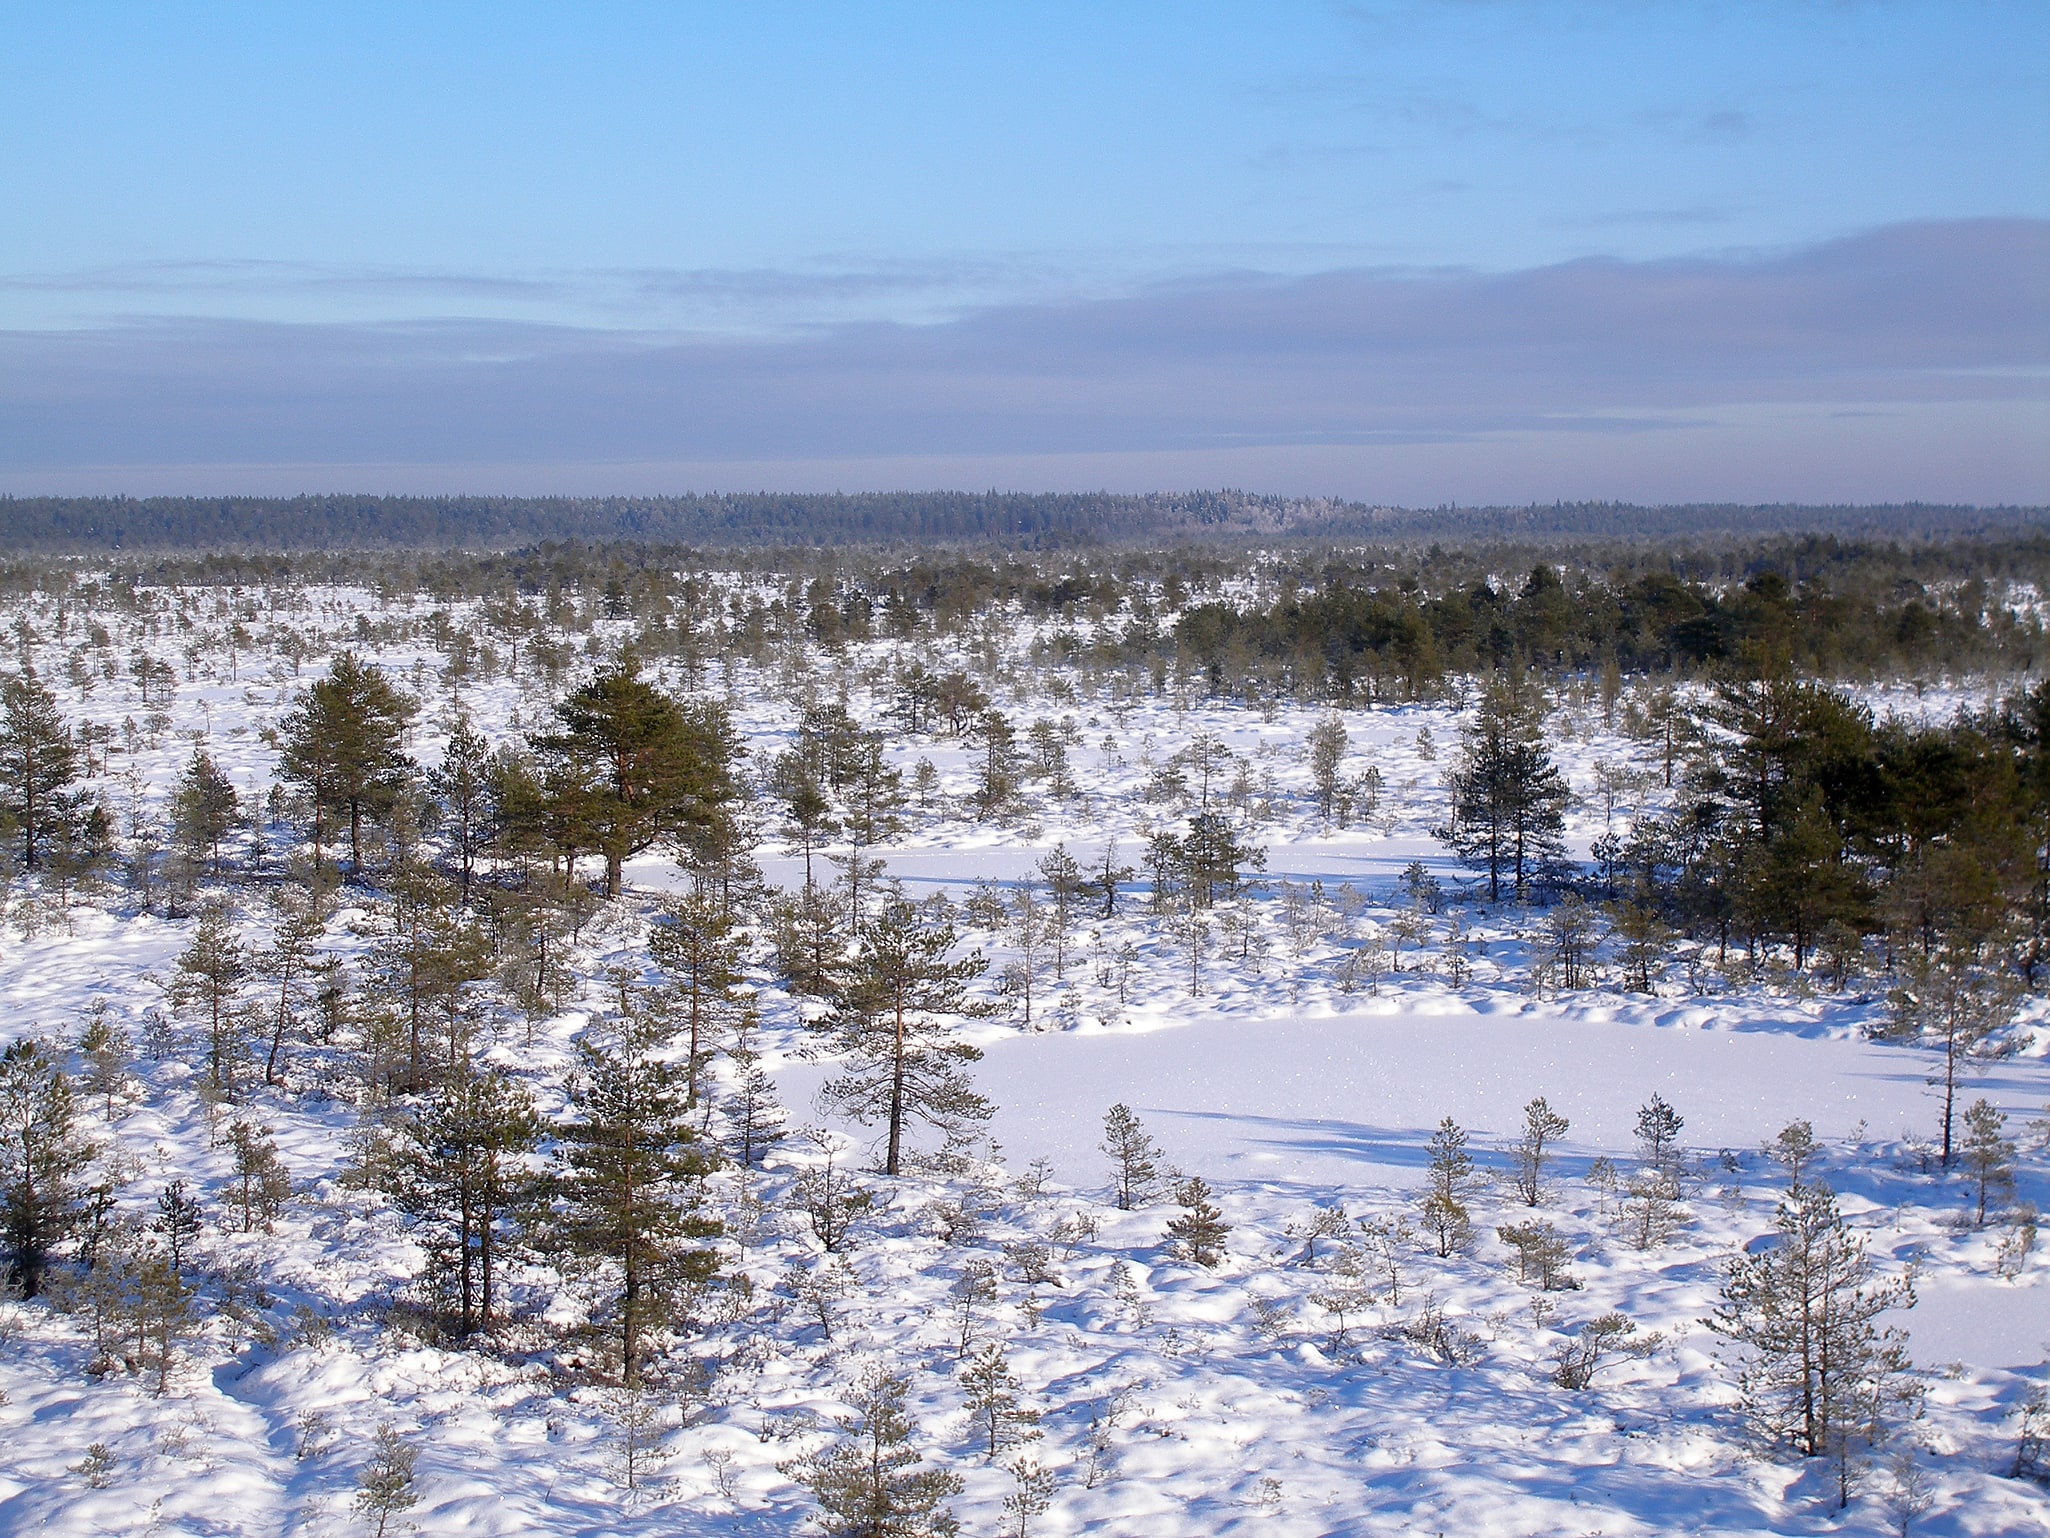 Põhja-Kõrvemaa Nature Reserve, Estland